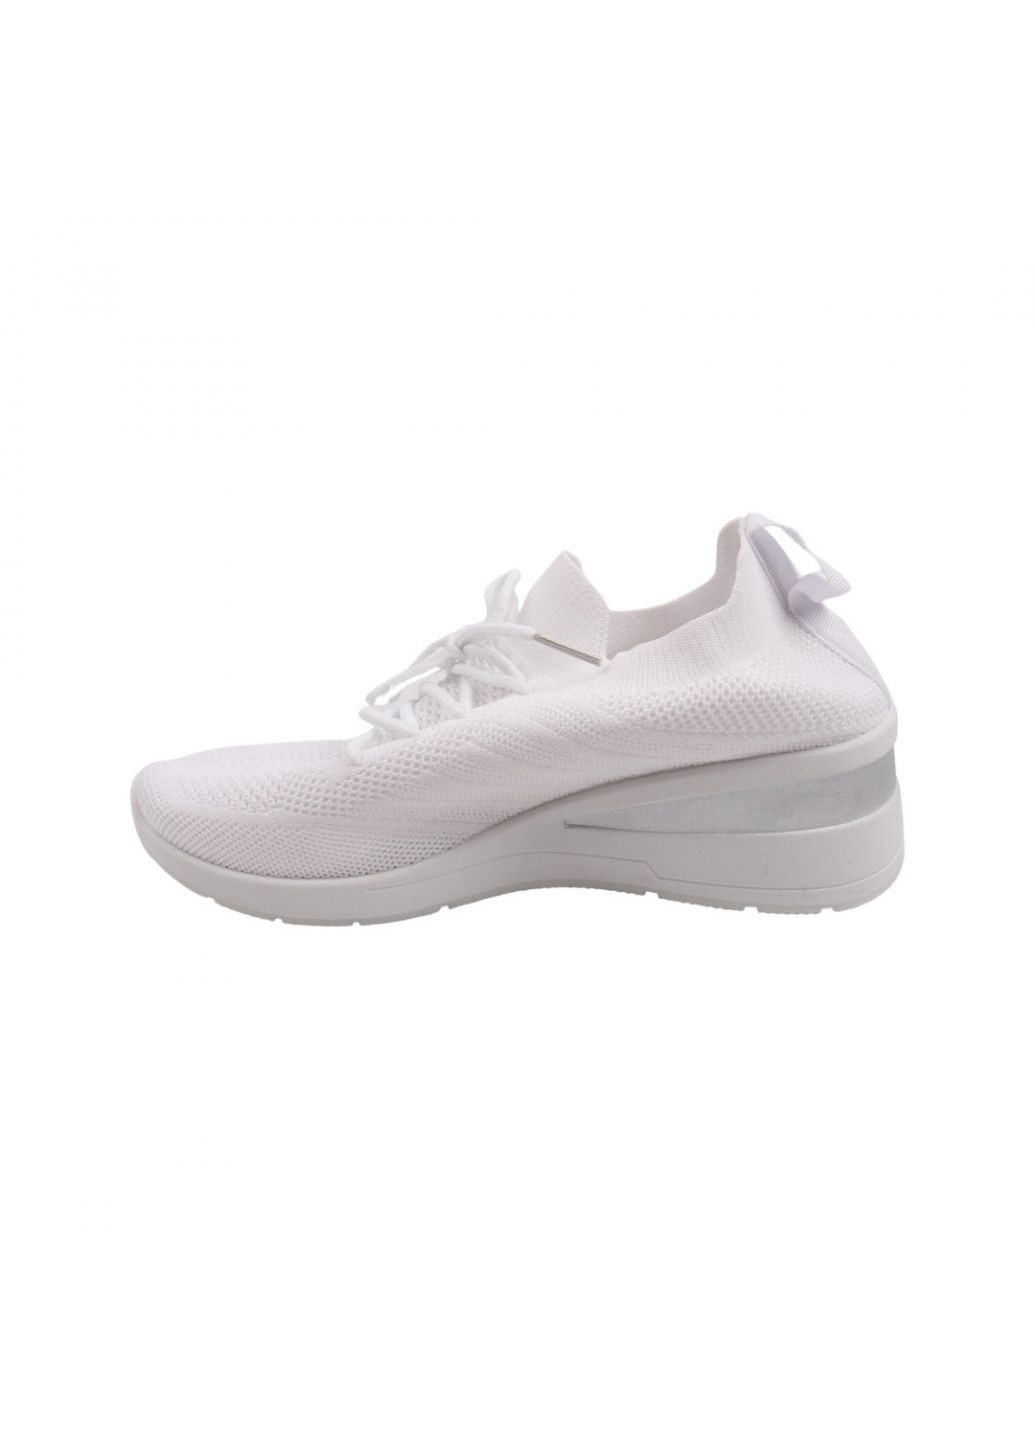 Белые кроссовки женские белые текстиль Fashion 26-22LK